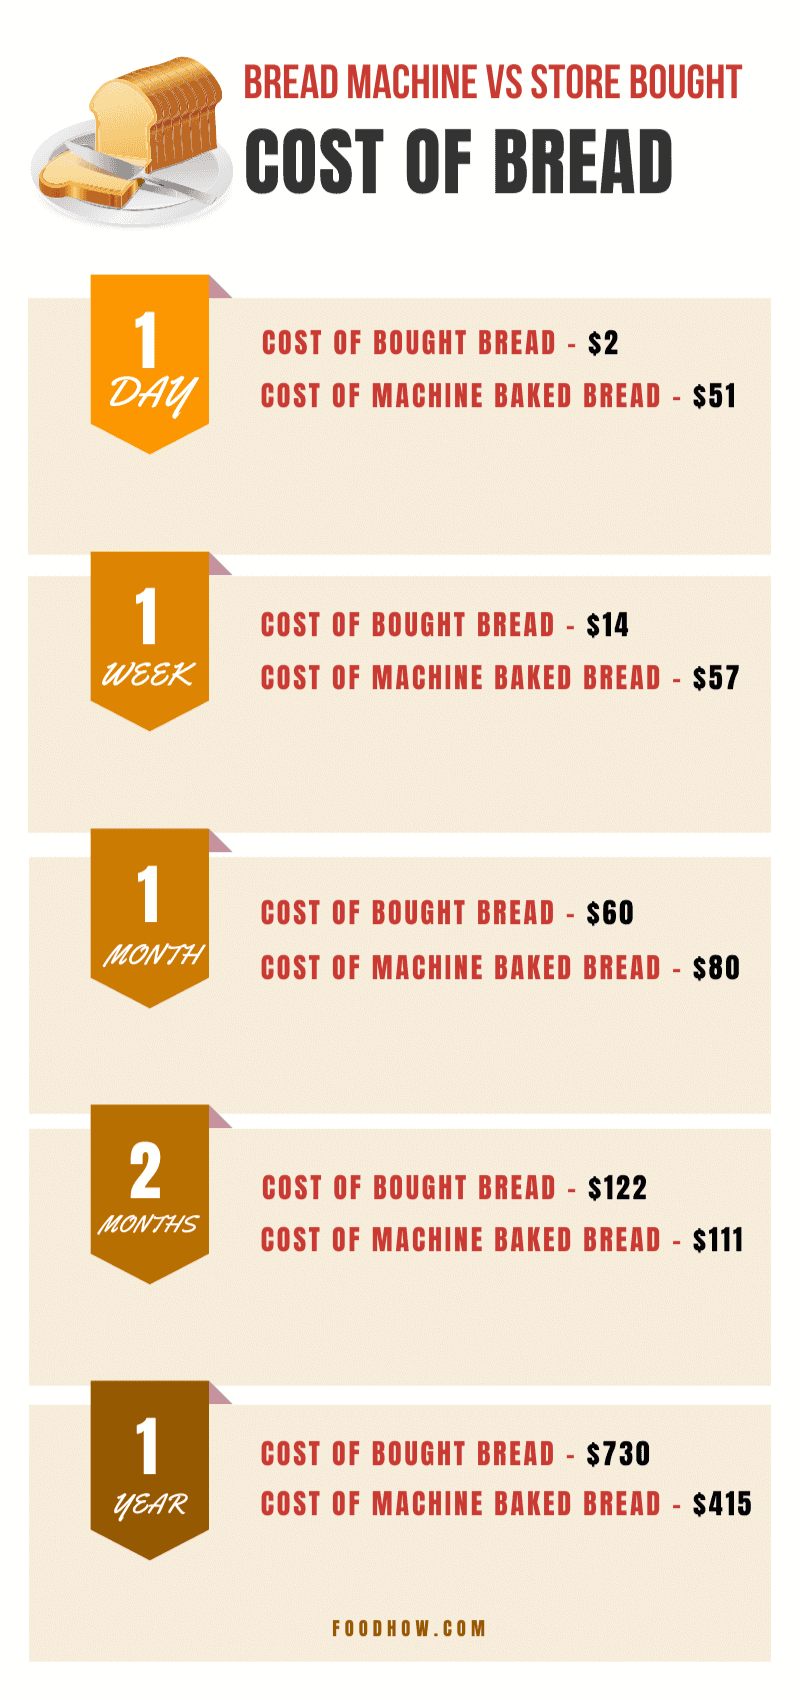 Bread machine vs store bought bread cost chart